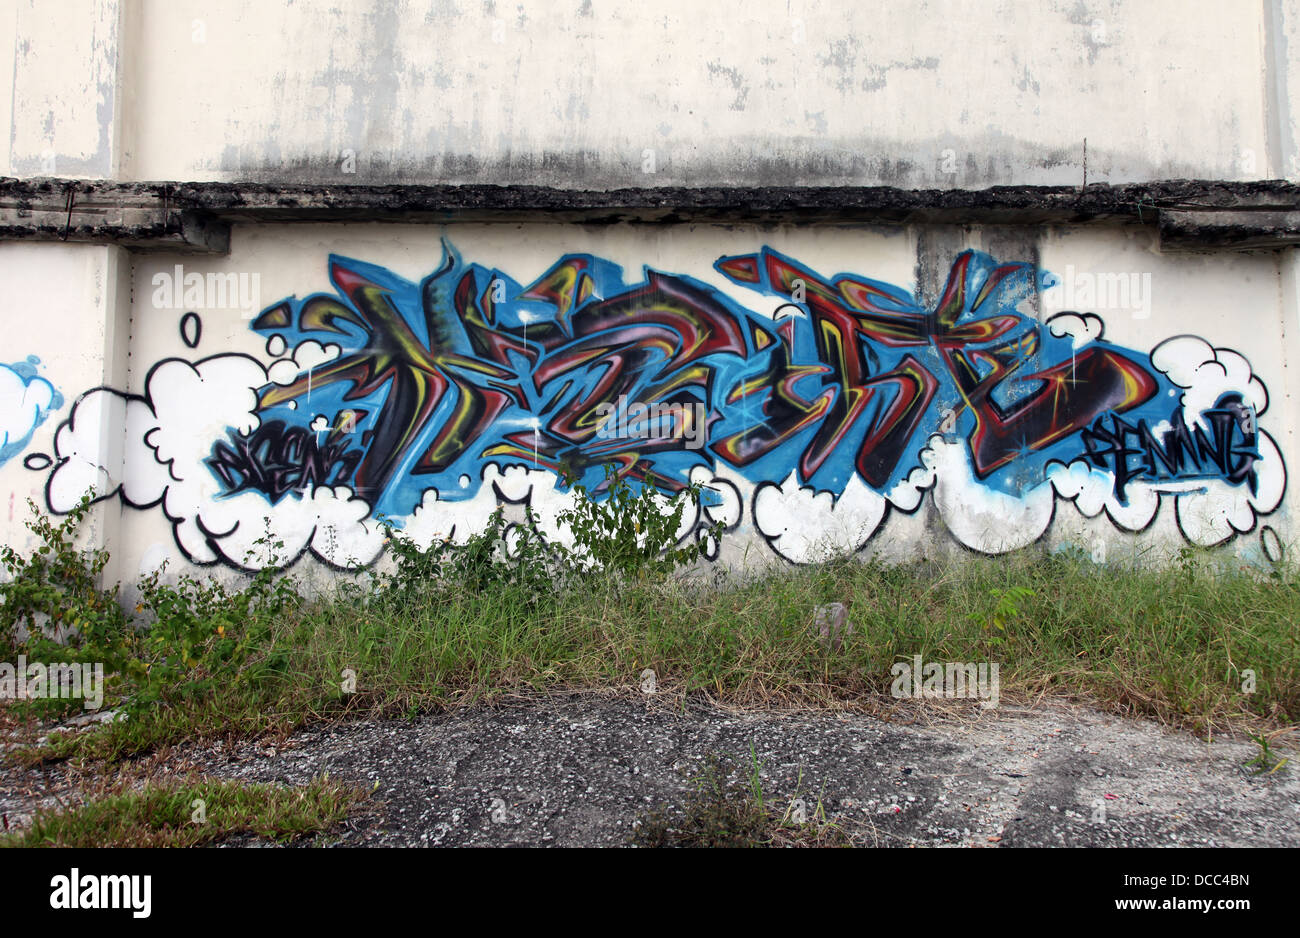 C'est une photo d'un graffiti tag bleu sur un mur sur un no man's land area en Malaisie. Nous voyons l'herbe et détruit un mur poussiéreux sale Banque D'Images